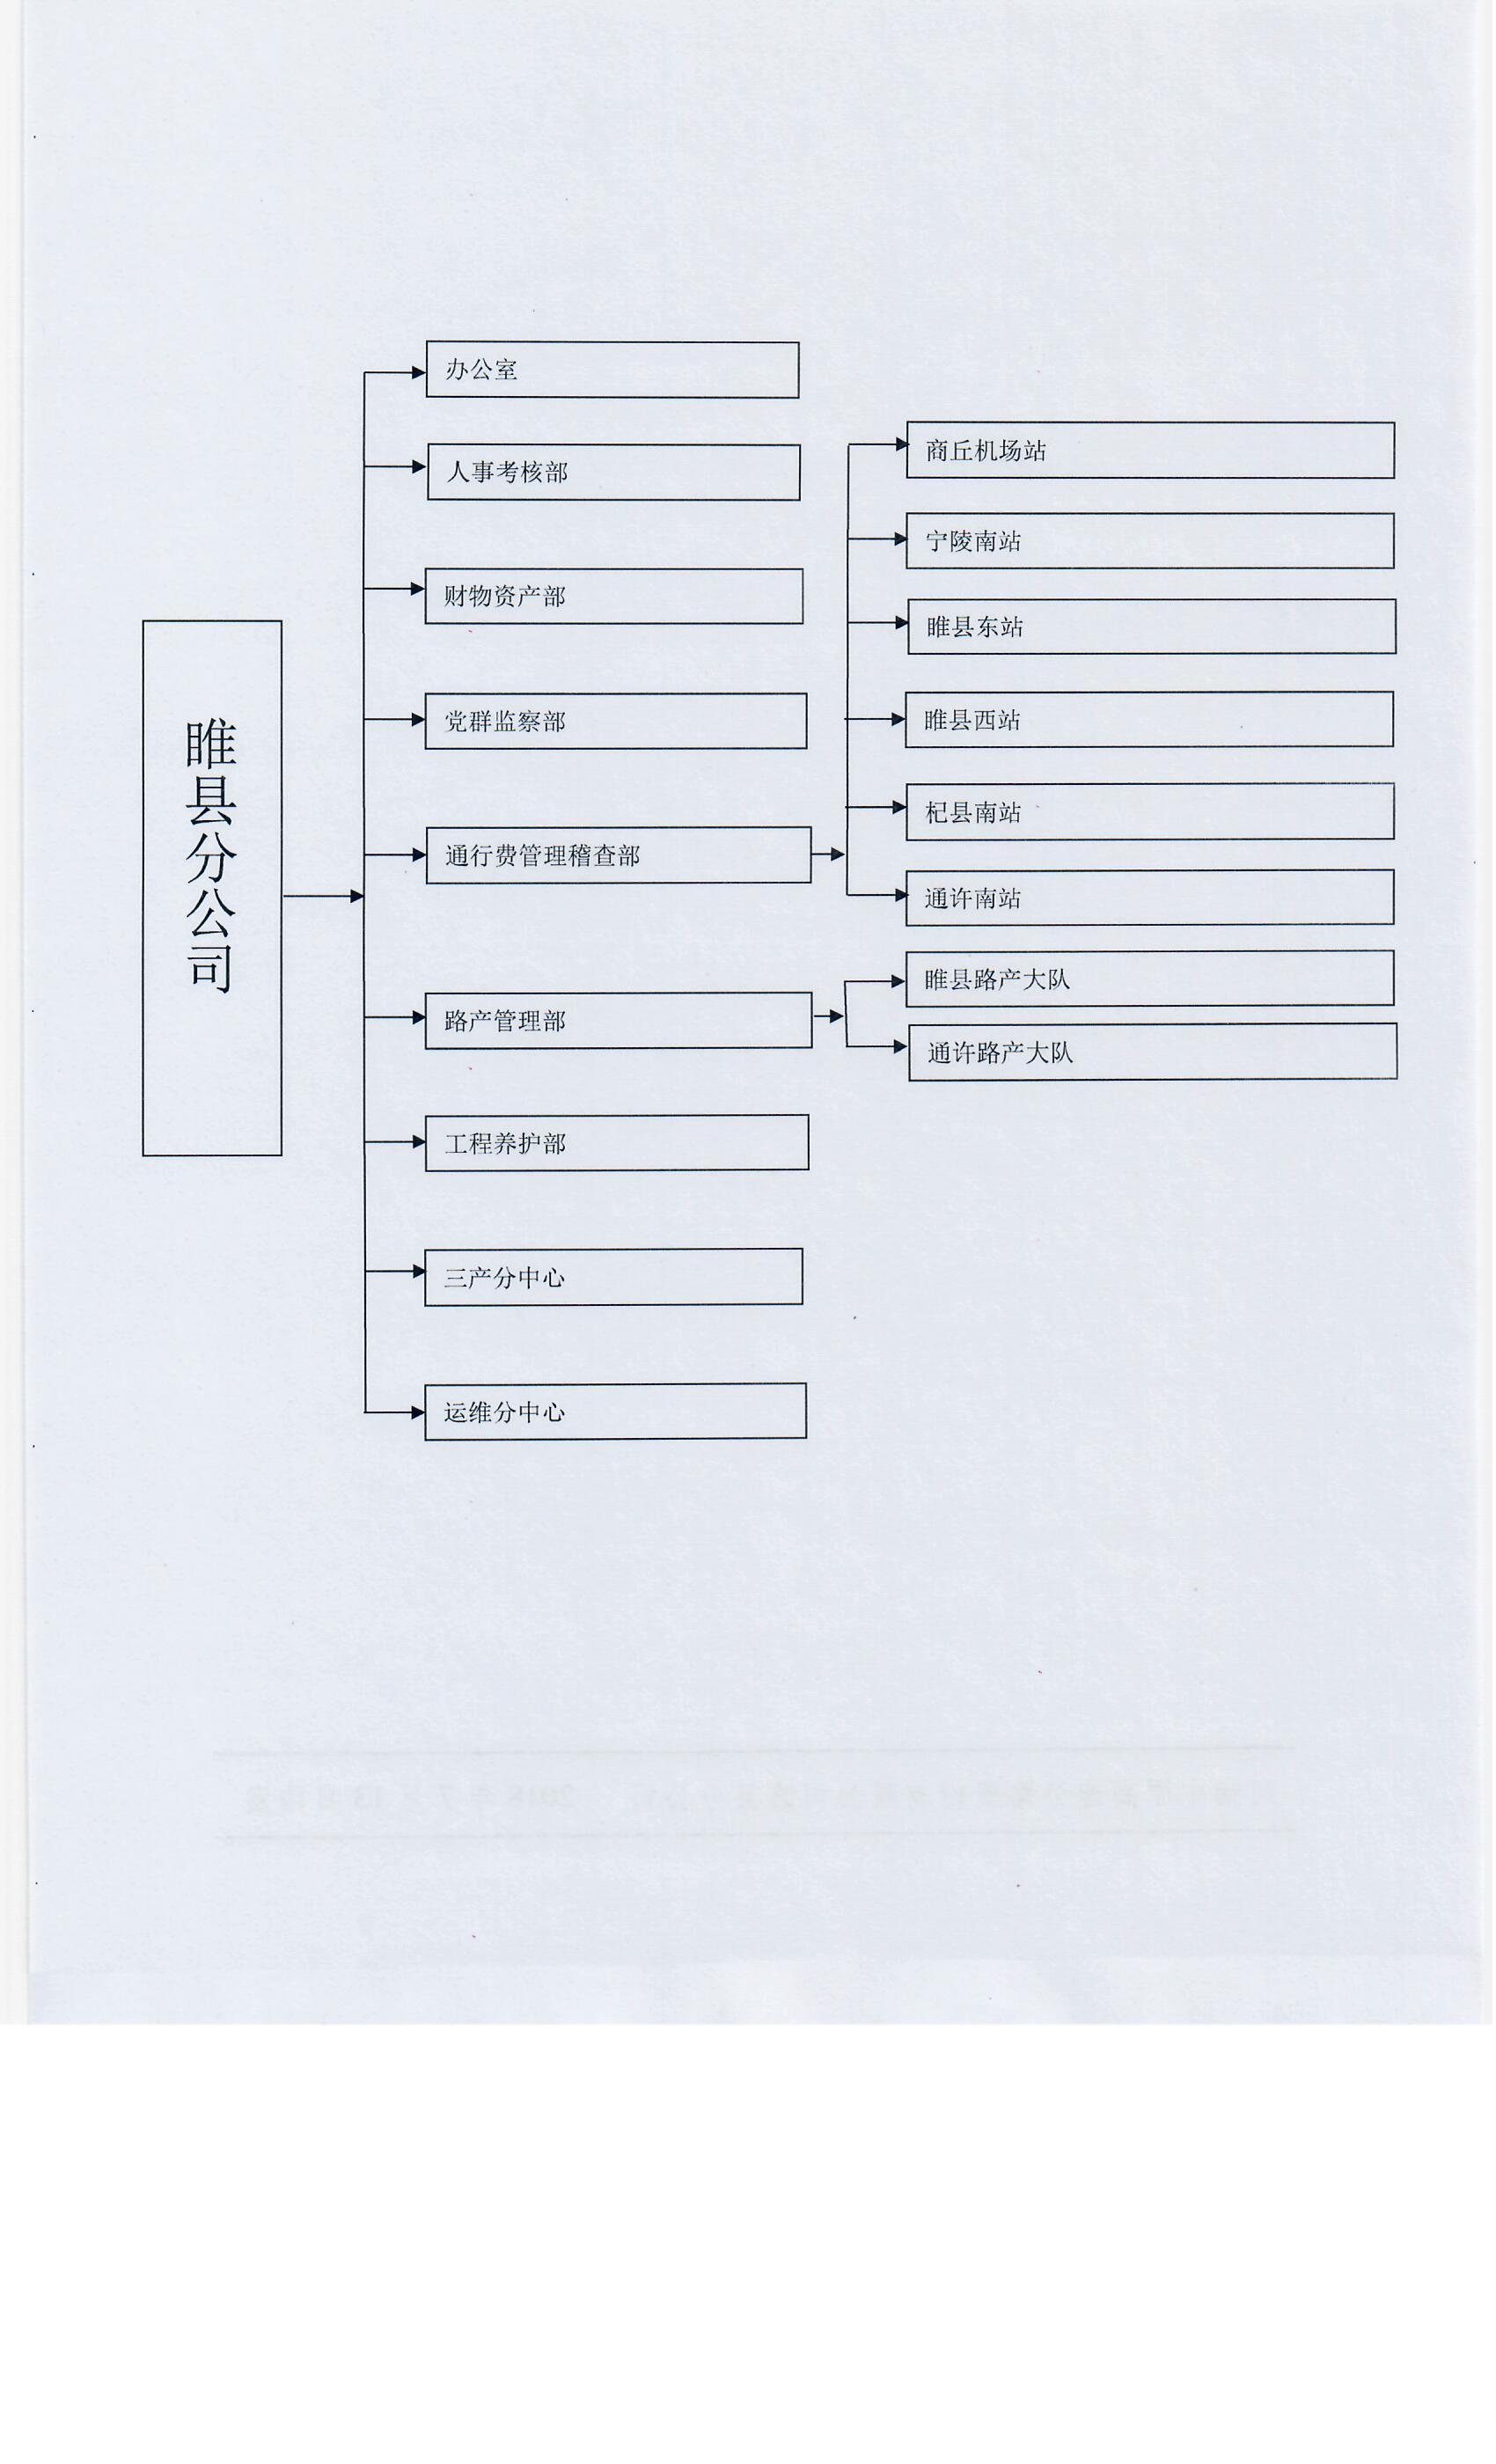 睢县分公司组织结构图.jpg